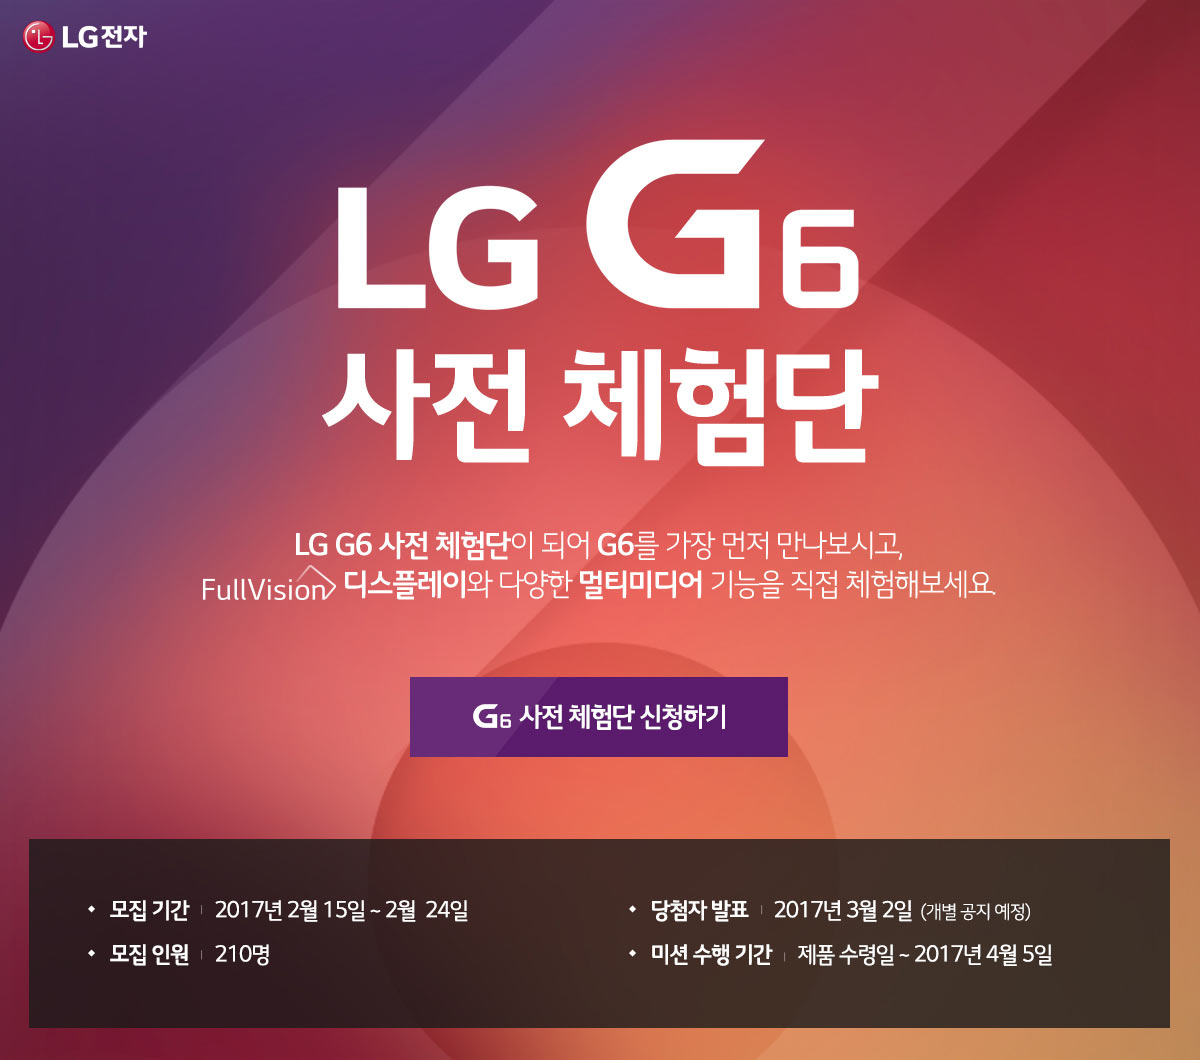 LG G6 ü